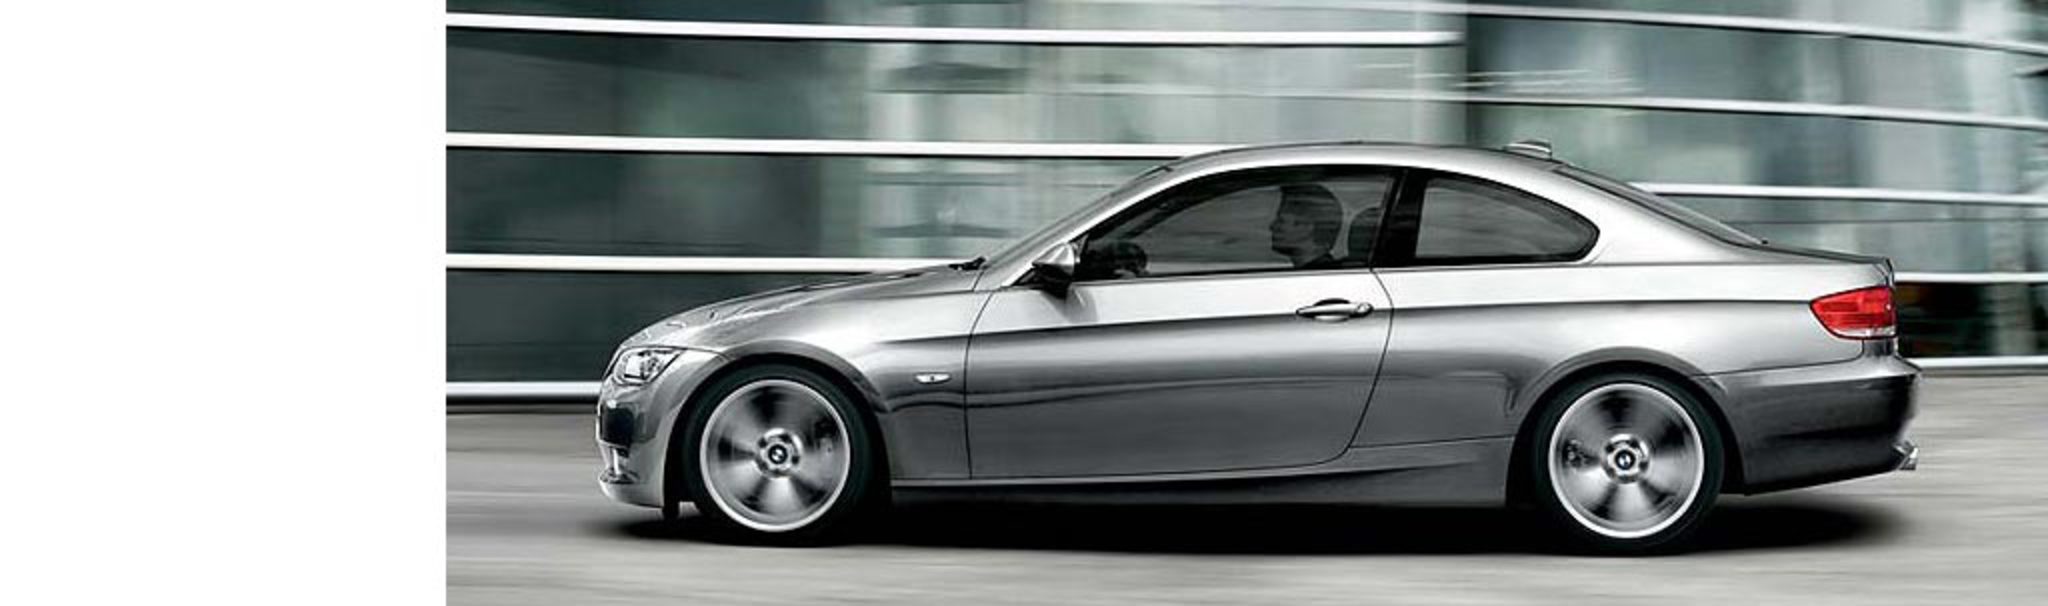 BMW 320d coupÃ©. 128 g/km de CO2. Construction légère, gestion de l'énergie,